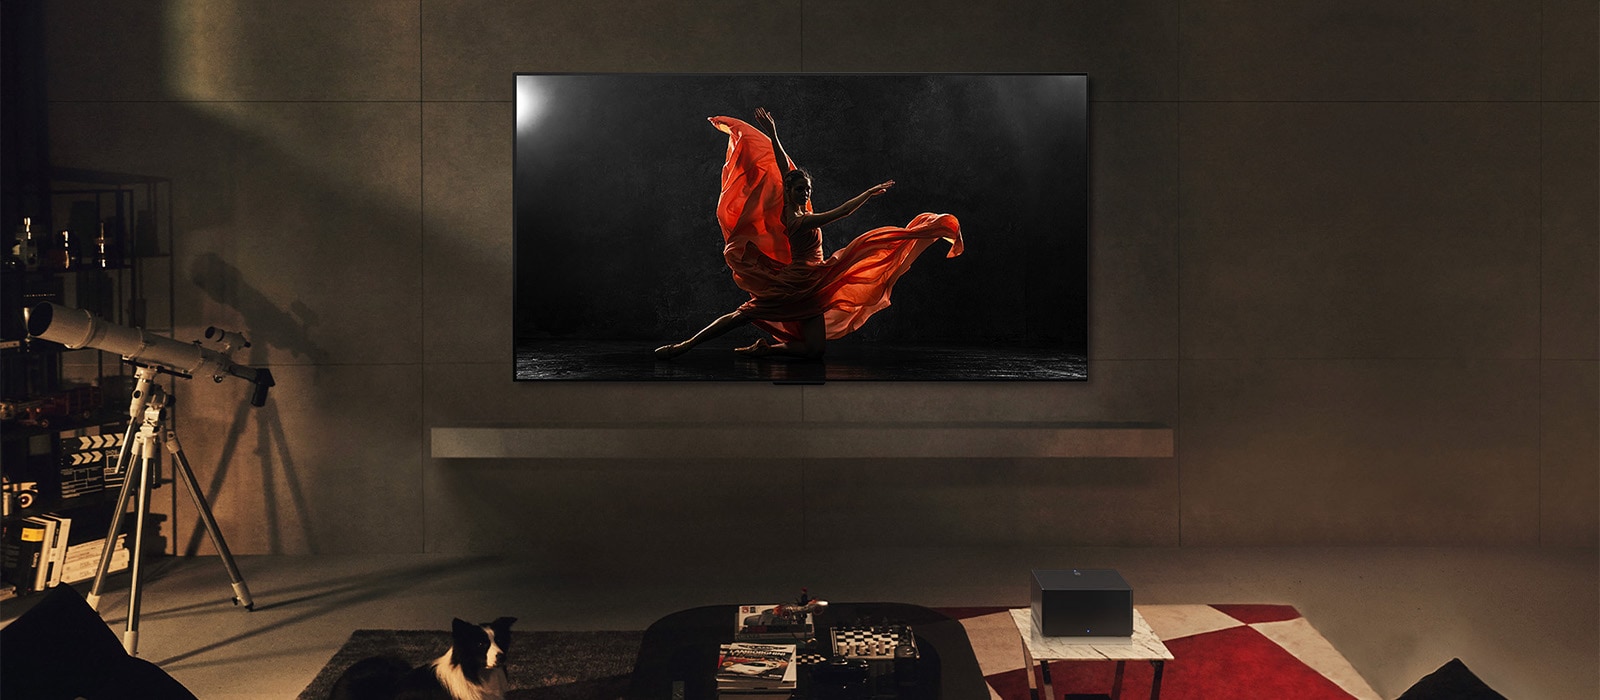 LG SIGNATURE OLED M4 и LG саудбар в съвременен дом през нощта. Екранното изображение на танцьор на тъмна сцена се показва с идеалните нива на яркост.